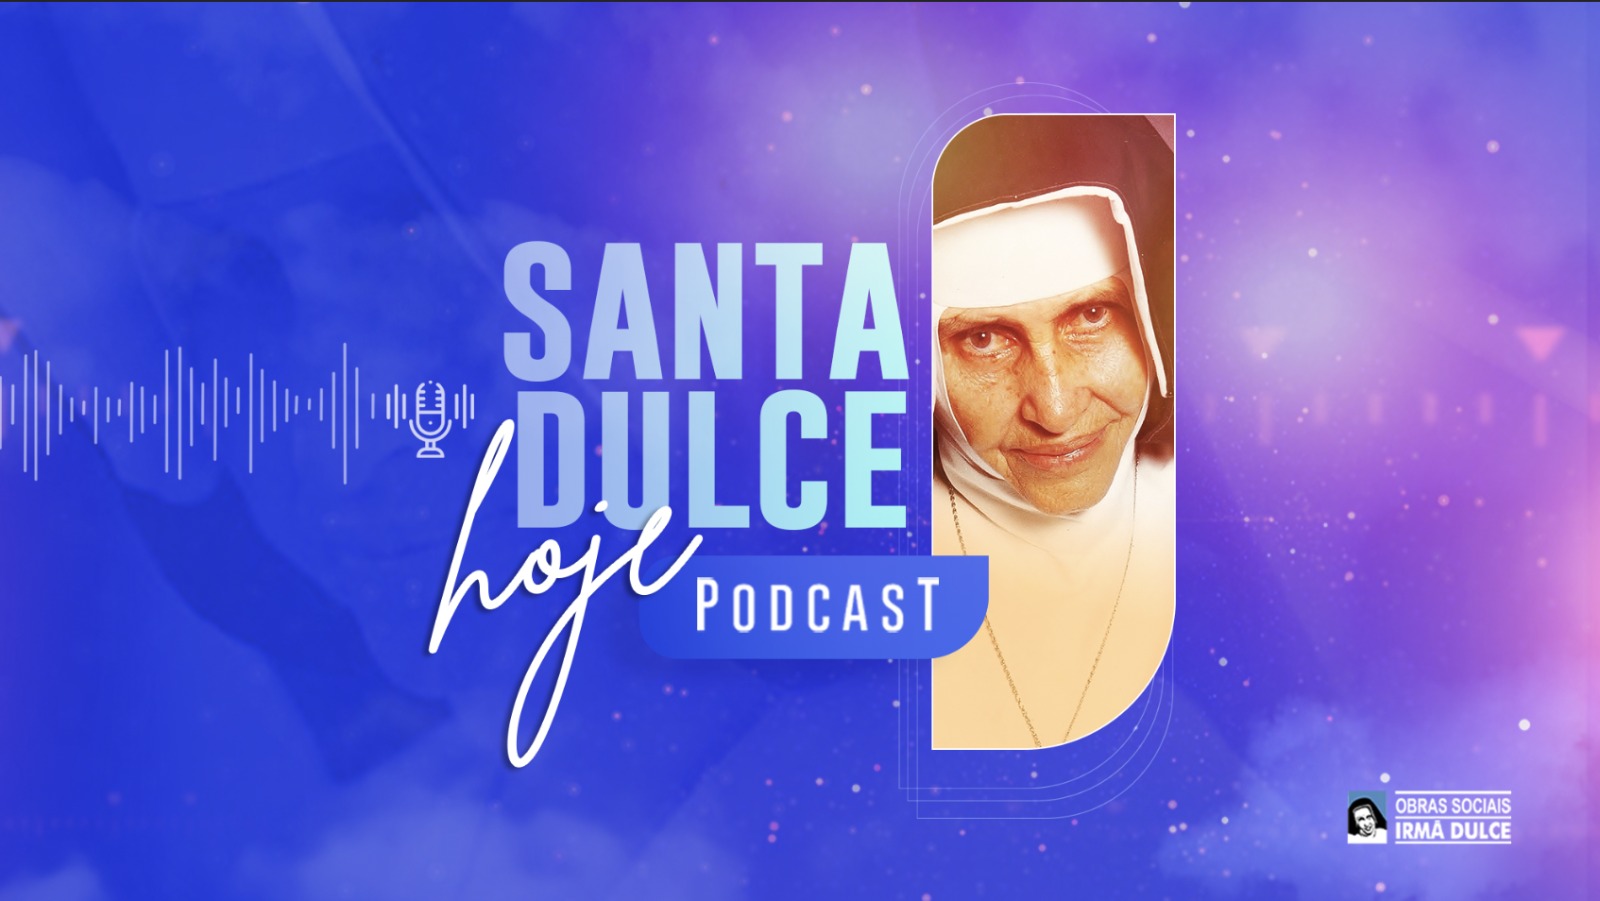 Podcast “Santa Dulce Hoje” já está disponível em nosso canal do youtube